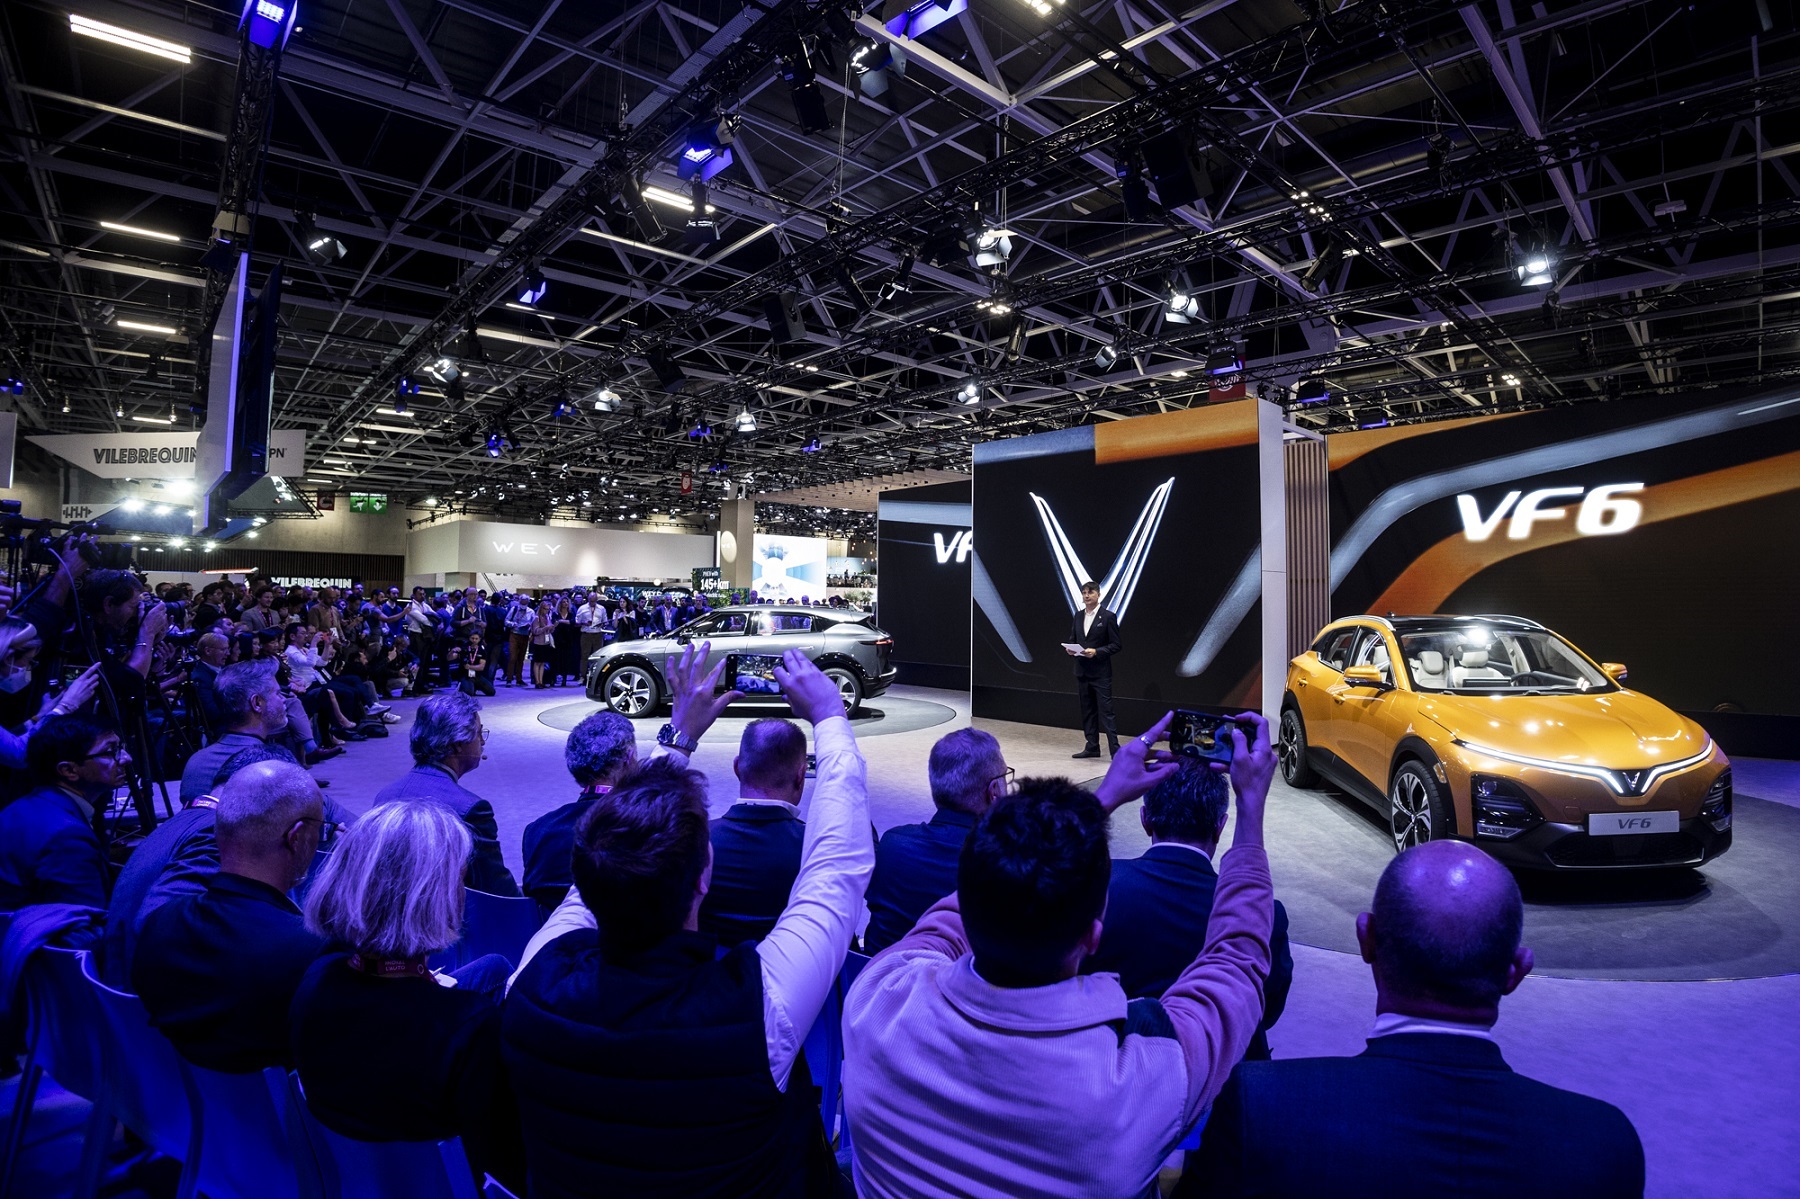 VinFast giới thiệu 4 mẫu ô tô điện VF 6, VF 7, VF 8, VF 9 và các dòng xe máy điện thông minh tại triển lãm Paris Motor Show 2022.